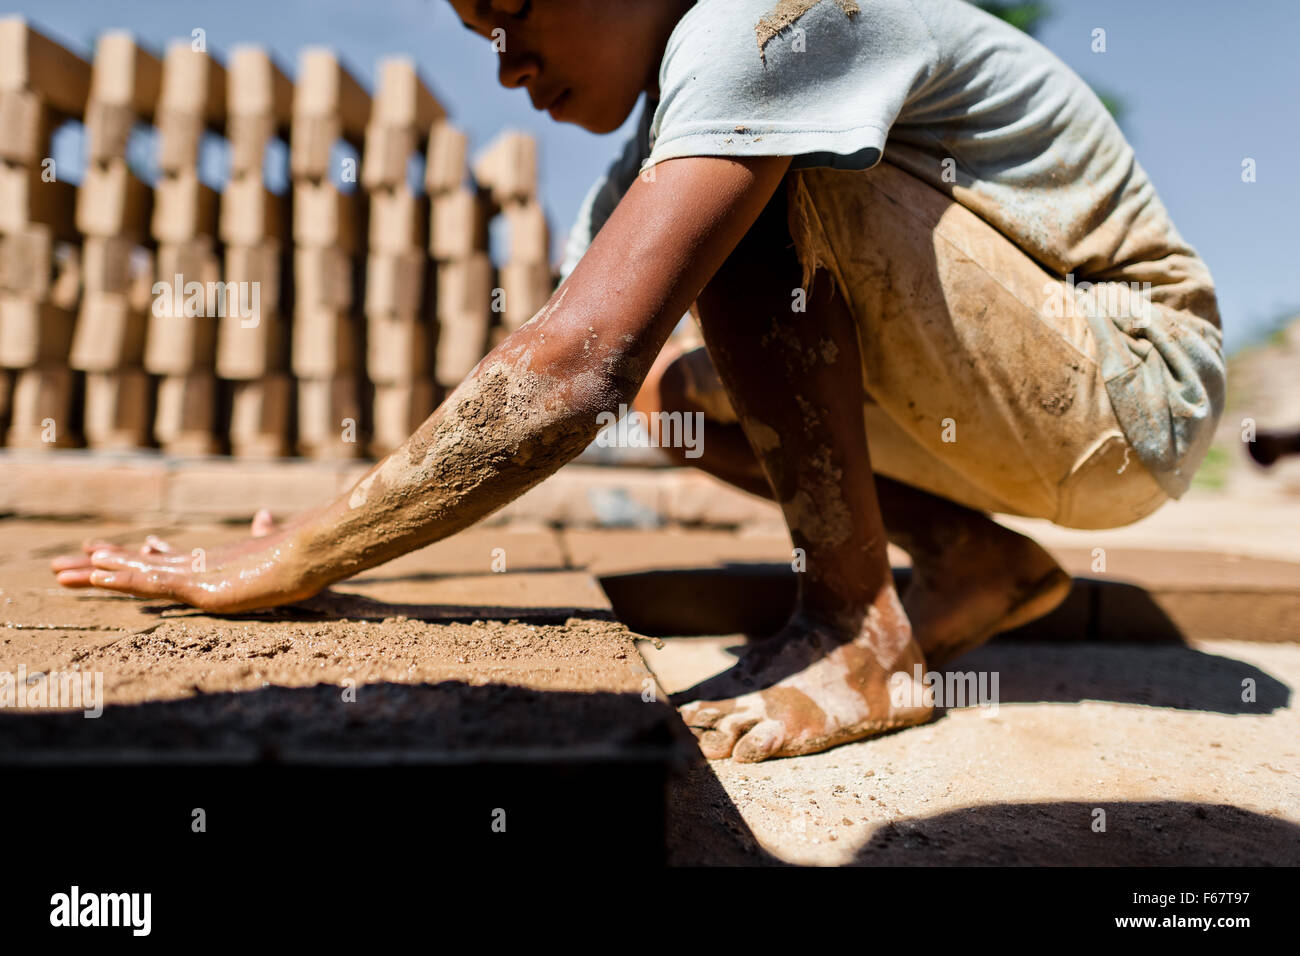 Moisés, une à l'âge de 13 ans, garçon salvadorienne, remplit un moule avec de l'argile pour la fabrication de briques à une briqueterie dans Istahua, El Salvador. Banque D'Images